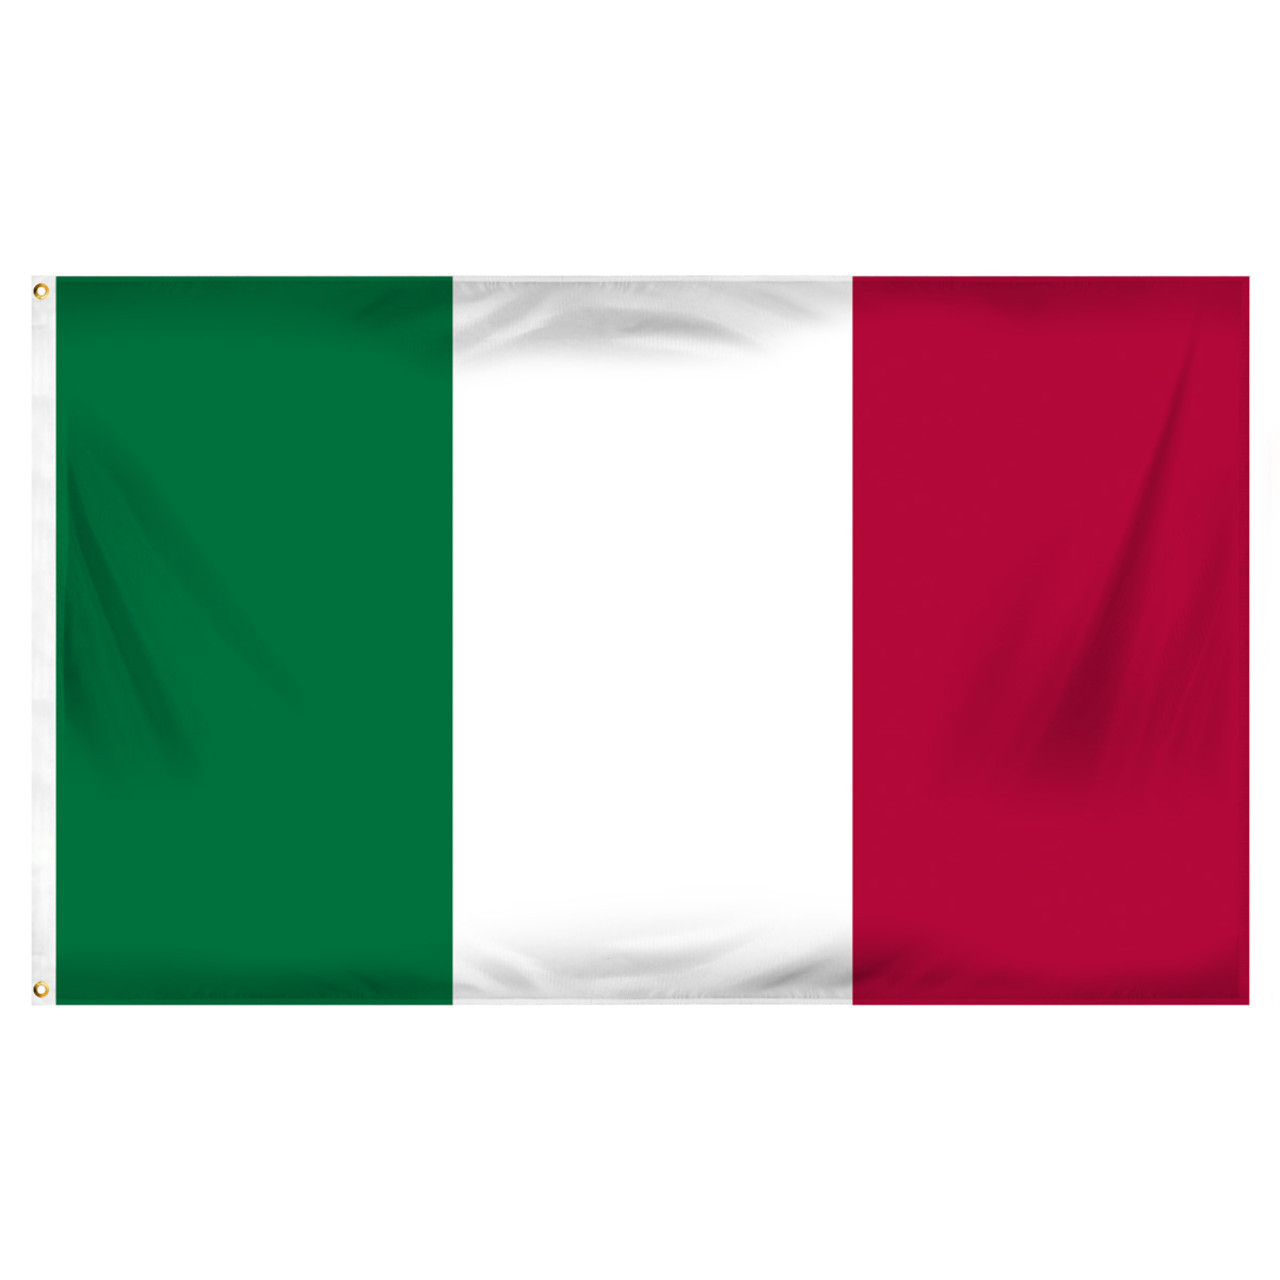 Italy Flag - Italian Flags - International Flags